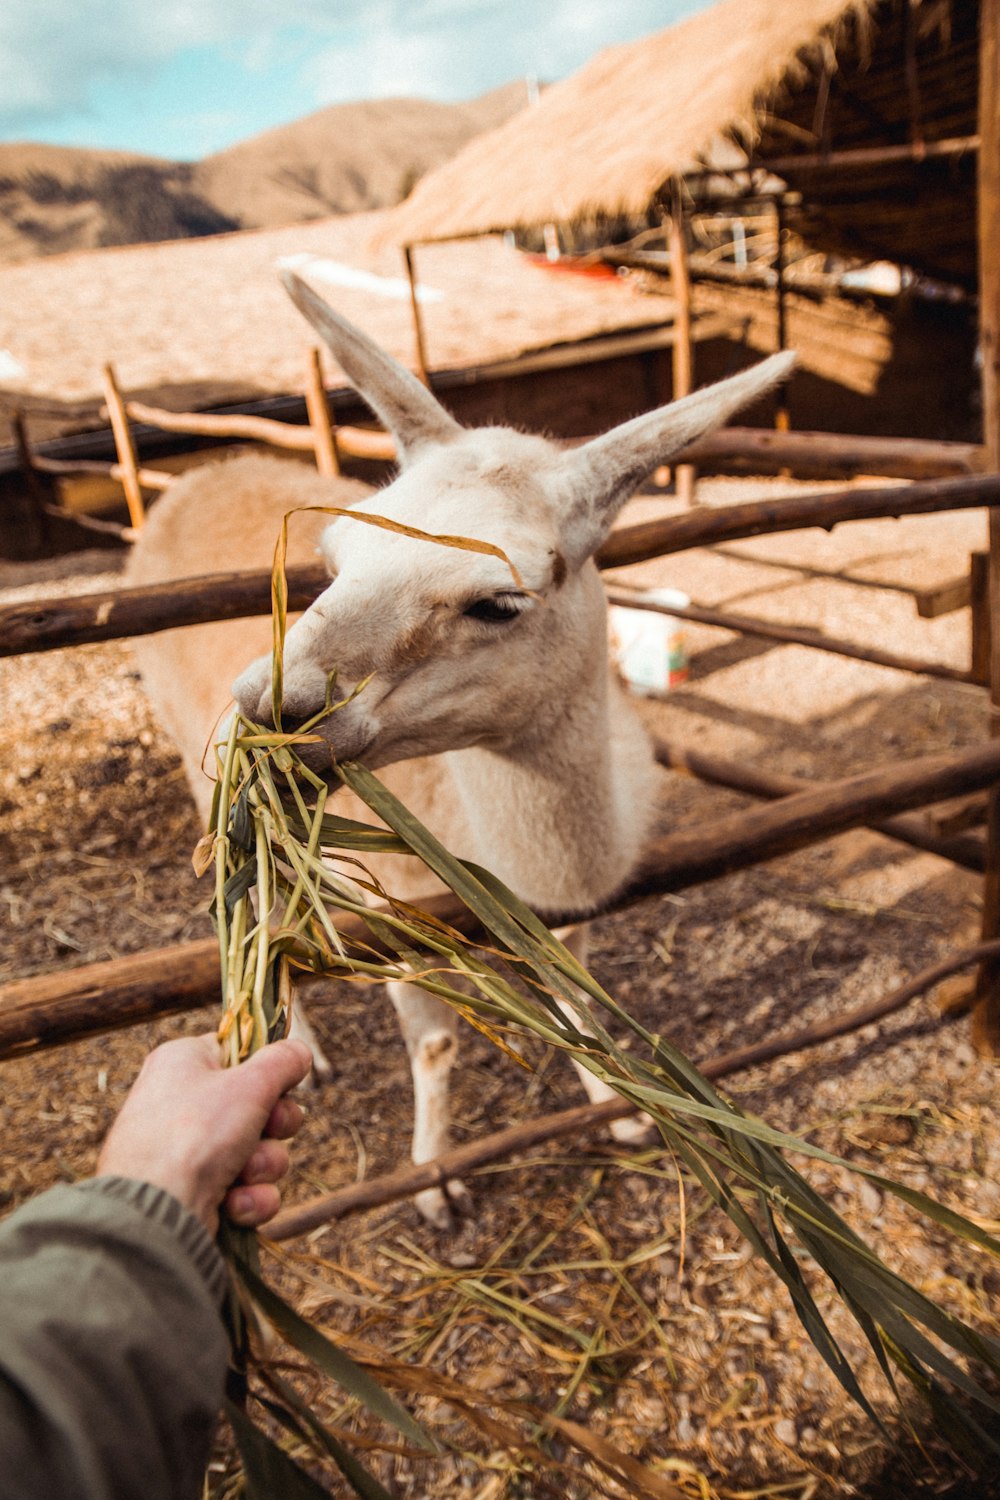 person feeding white goat